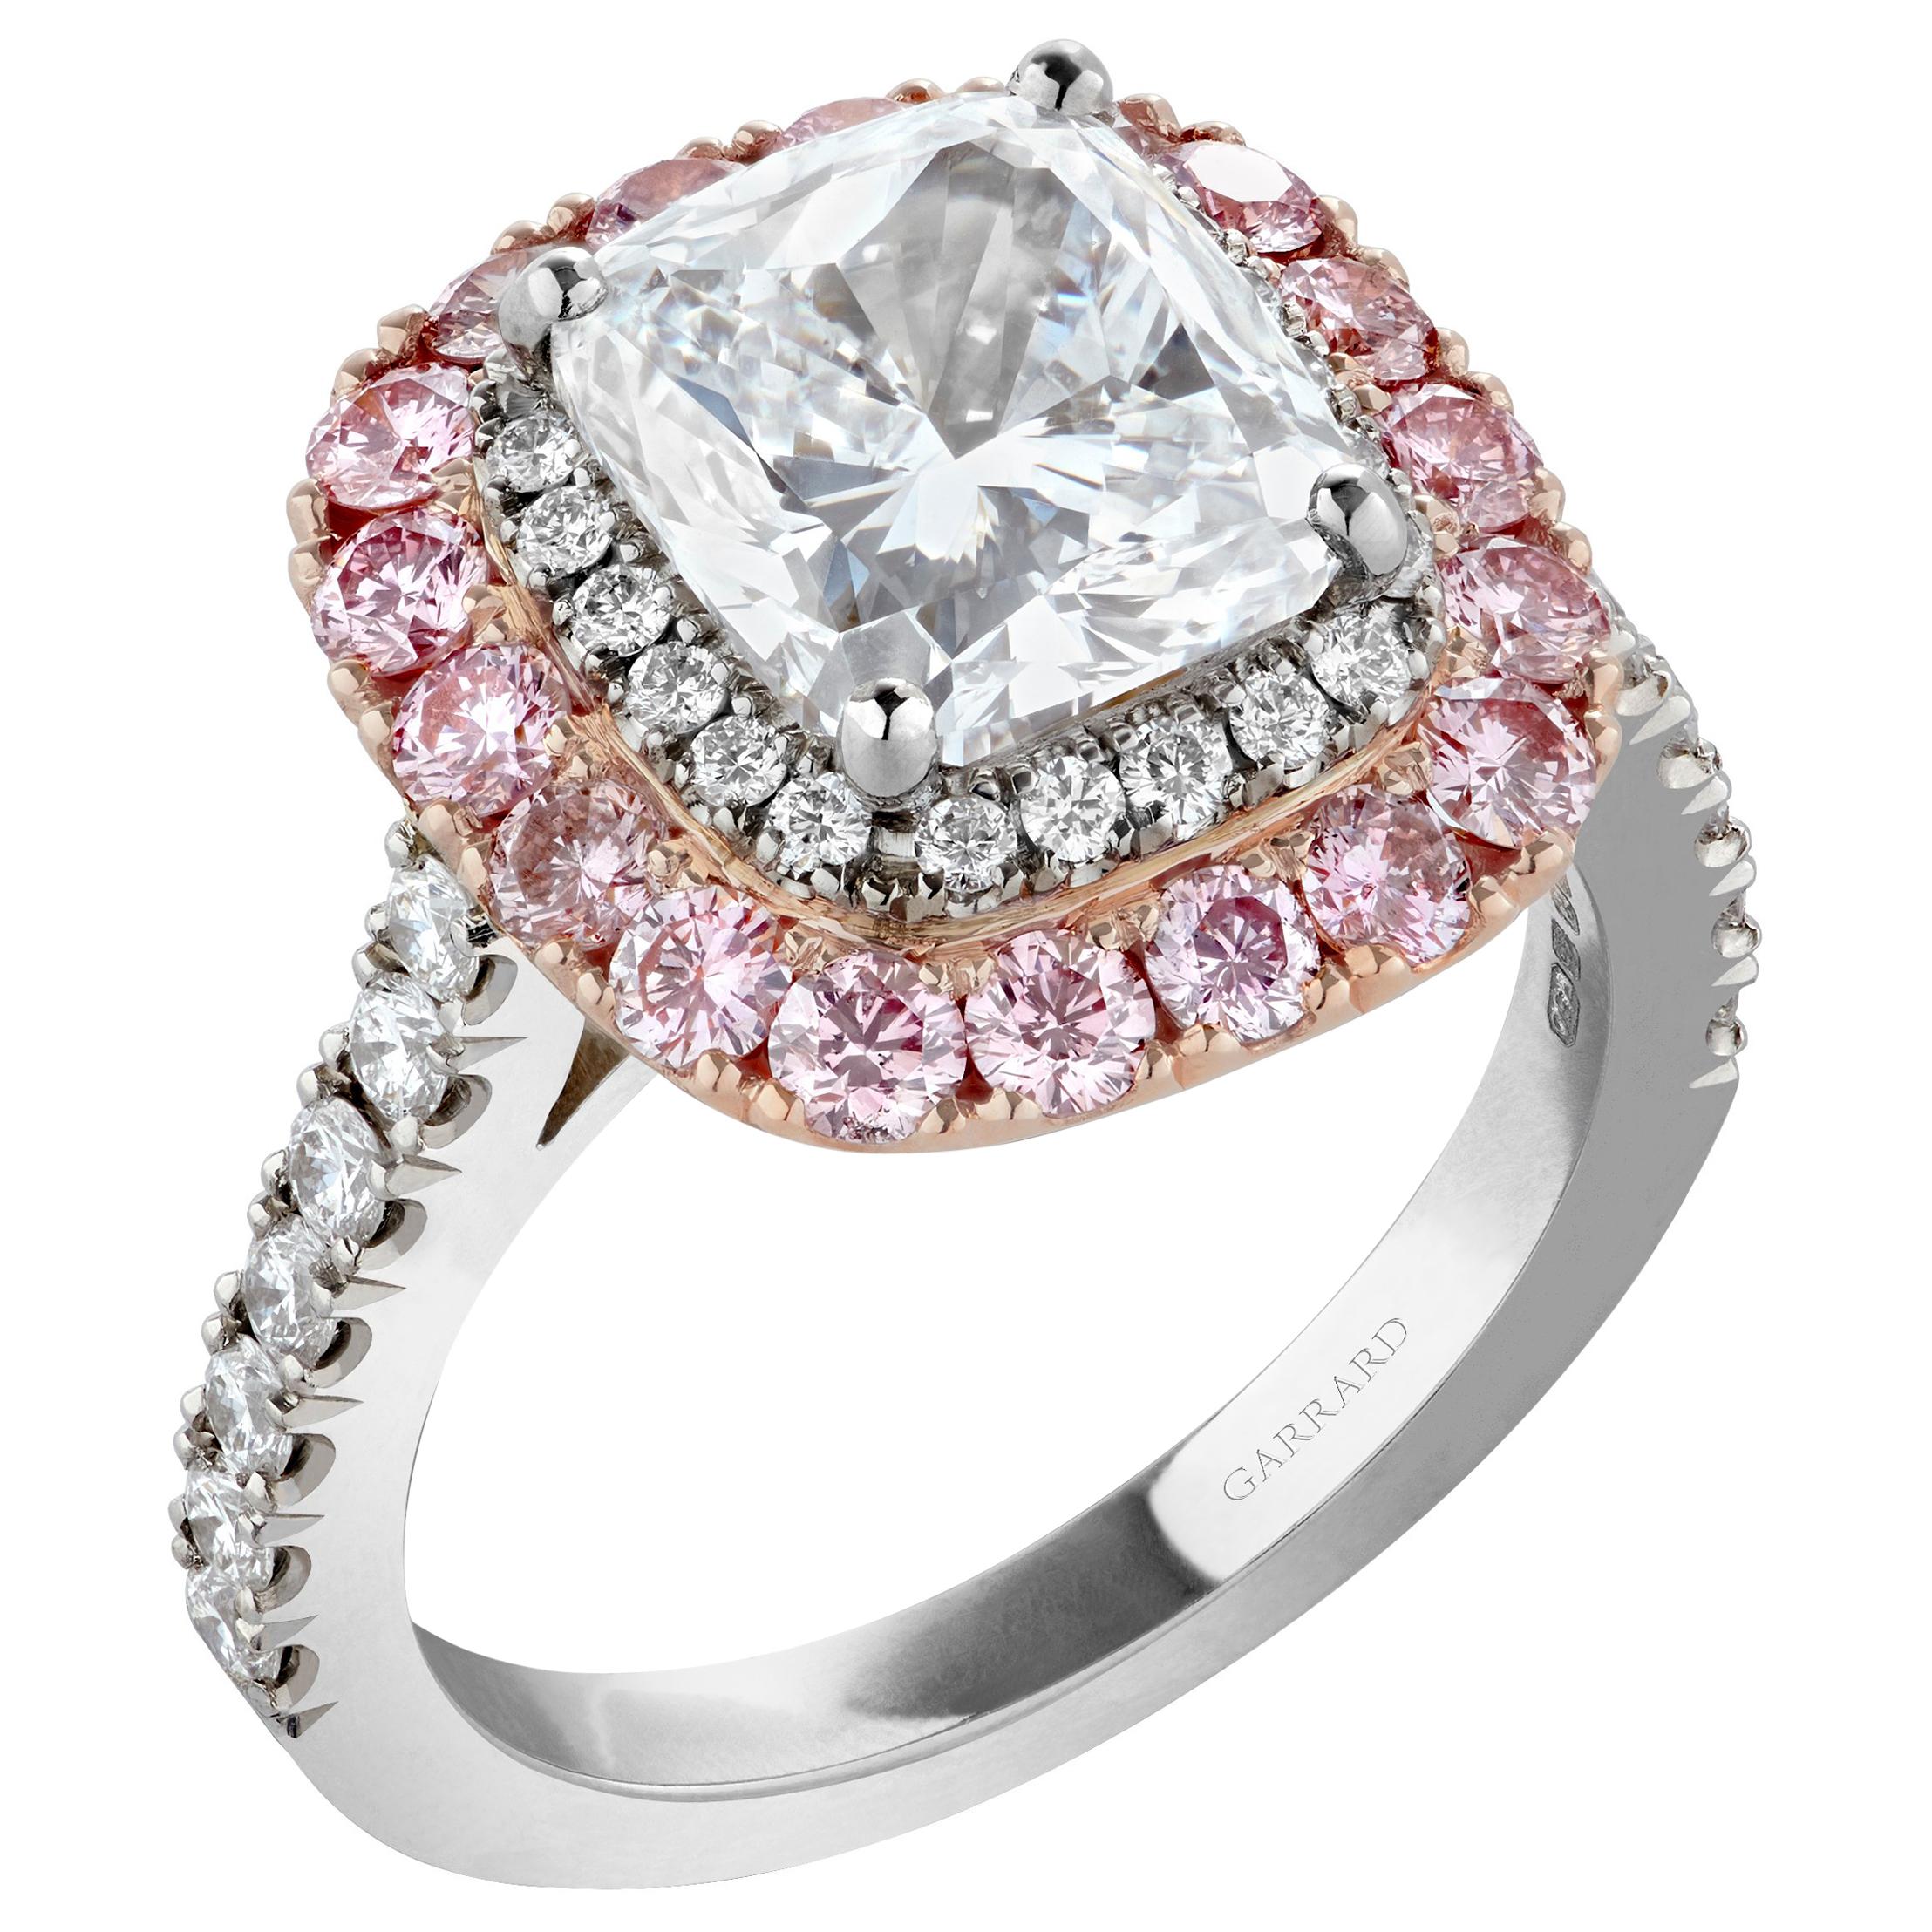 Garrard Platinum 3.06 Carat DVS1 GIA Diamond Engagement Ring Pink Pave Surround